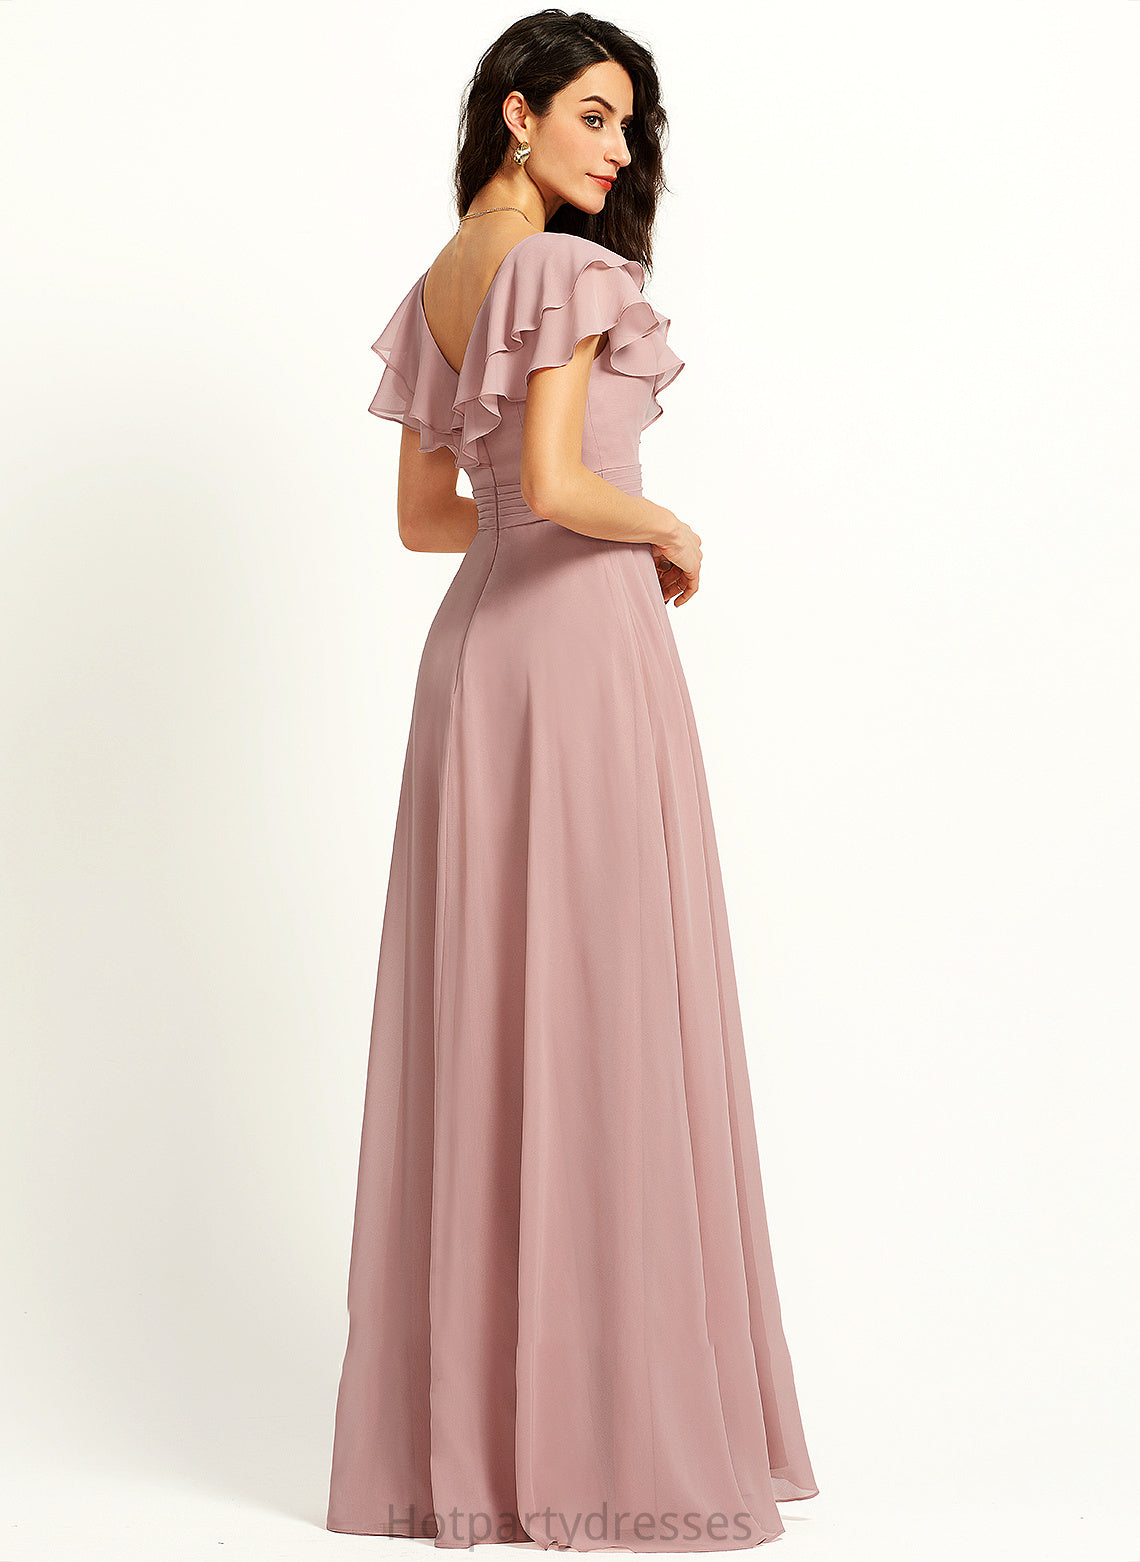 Neckline Ruffle A-Line SplitFront Fabric Embellishment Floor-Length Silhouette V-neck Length Amy Floor Length Bridesmaid Dresses